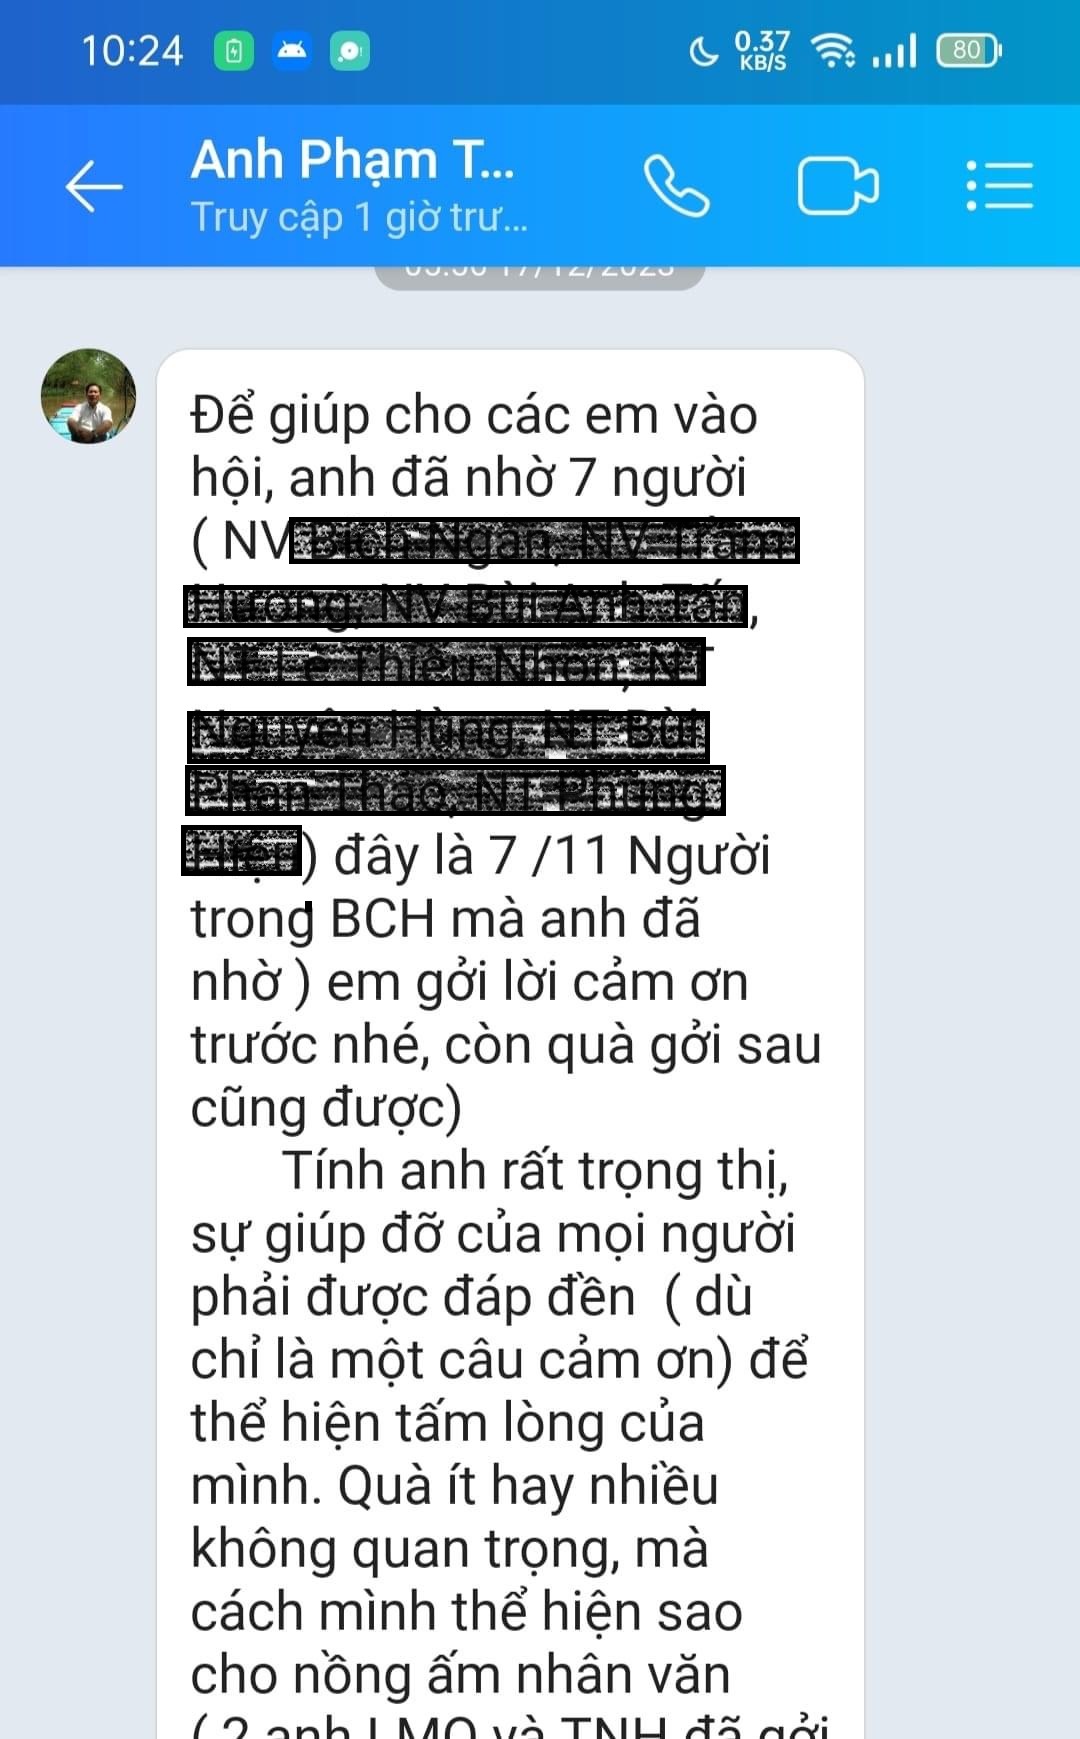 Tin nhắn của ông Tín gửi cho bà L. liệt kê những cá nhân trong hội - Ảnh từ Facebook của bà L.